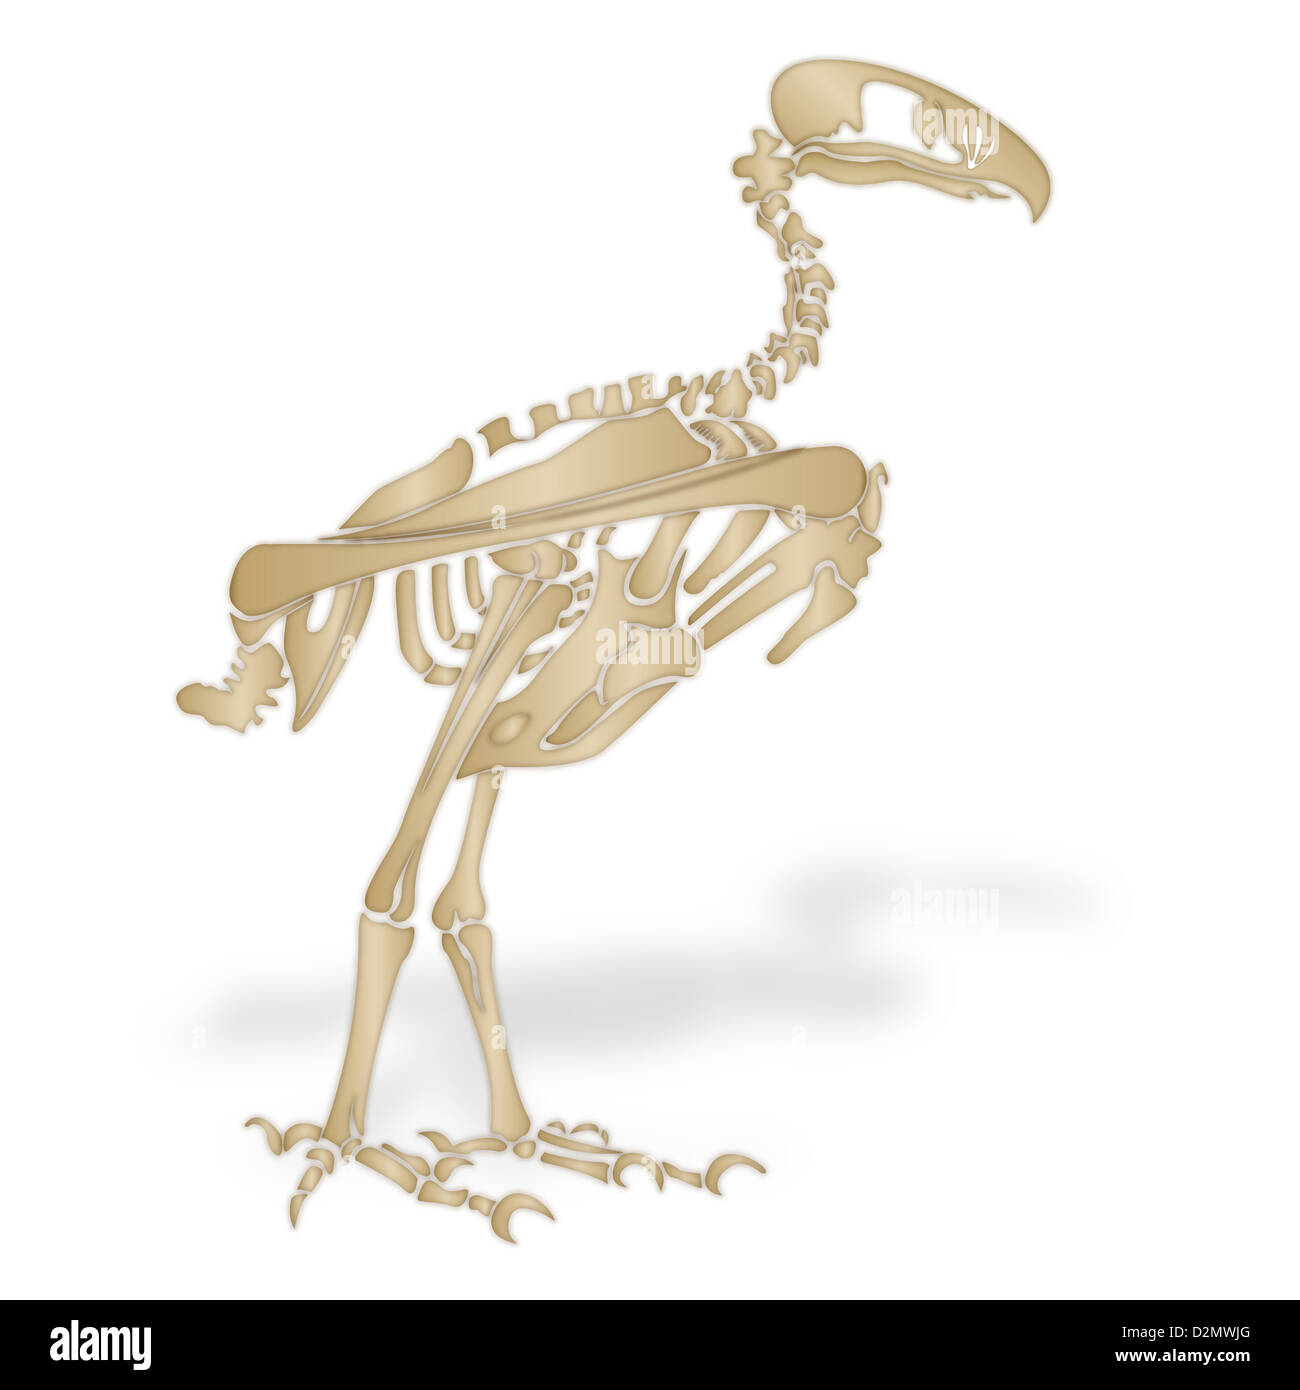 Skeleton of a terror bird Stock Photo